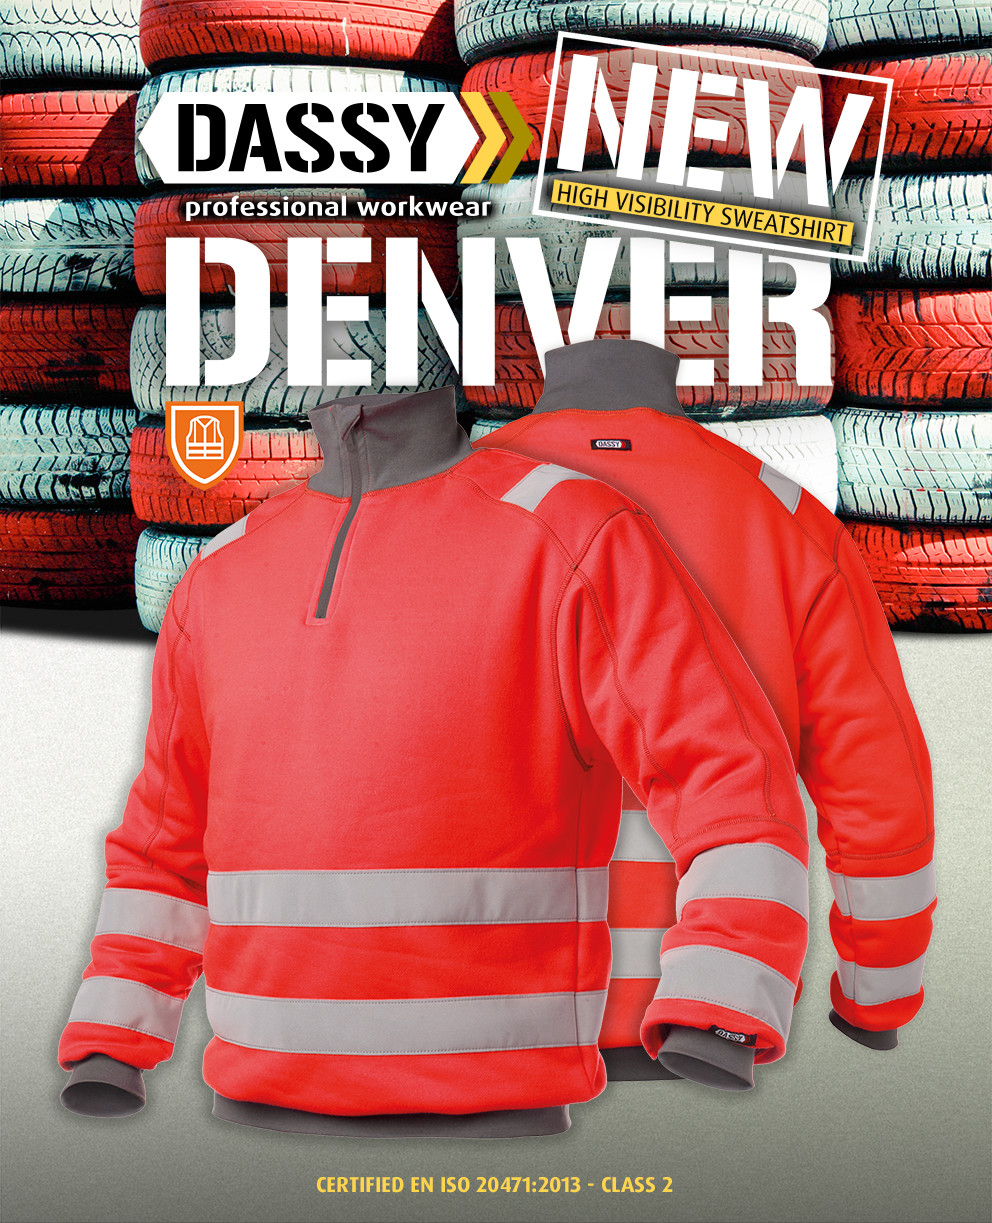 DASSY Denver hoge zichtbaarheid werksweater